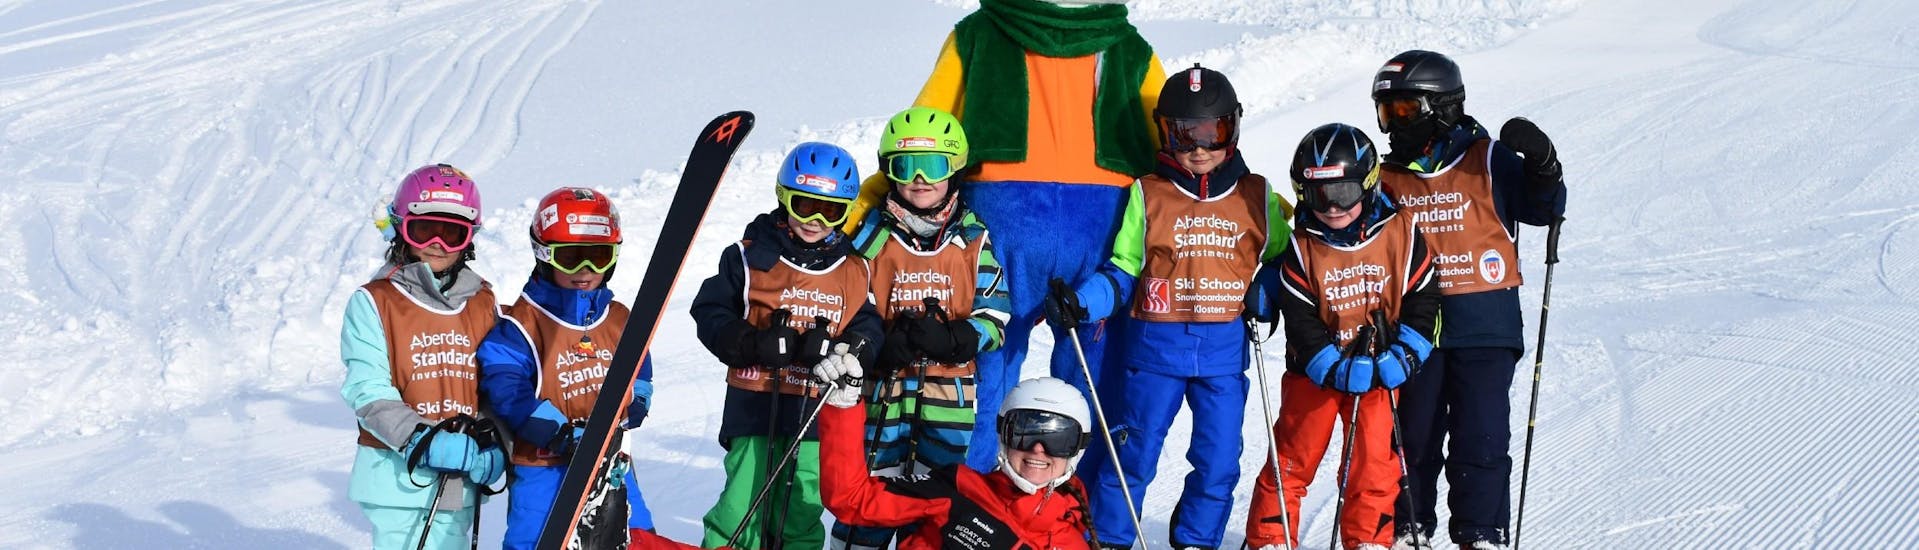 Clases de esquí para niños (a partir de 3 años) para principiantes.